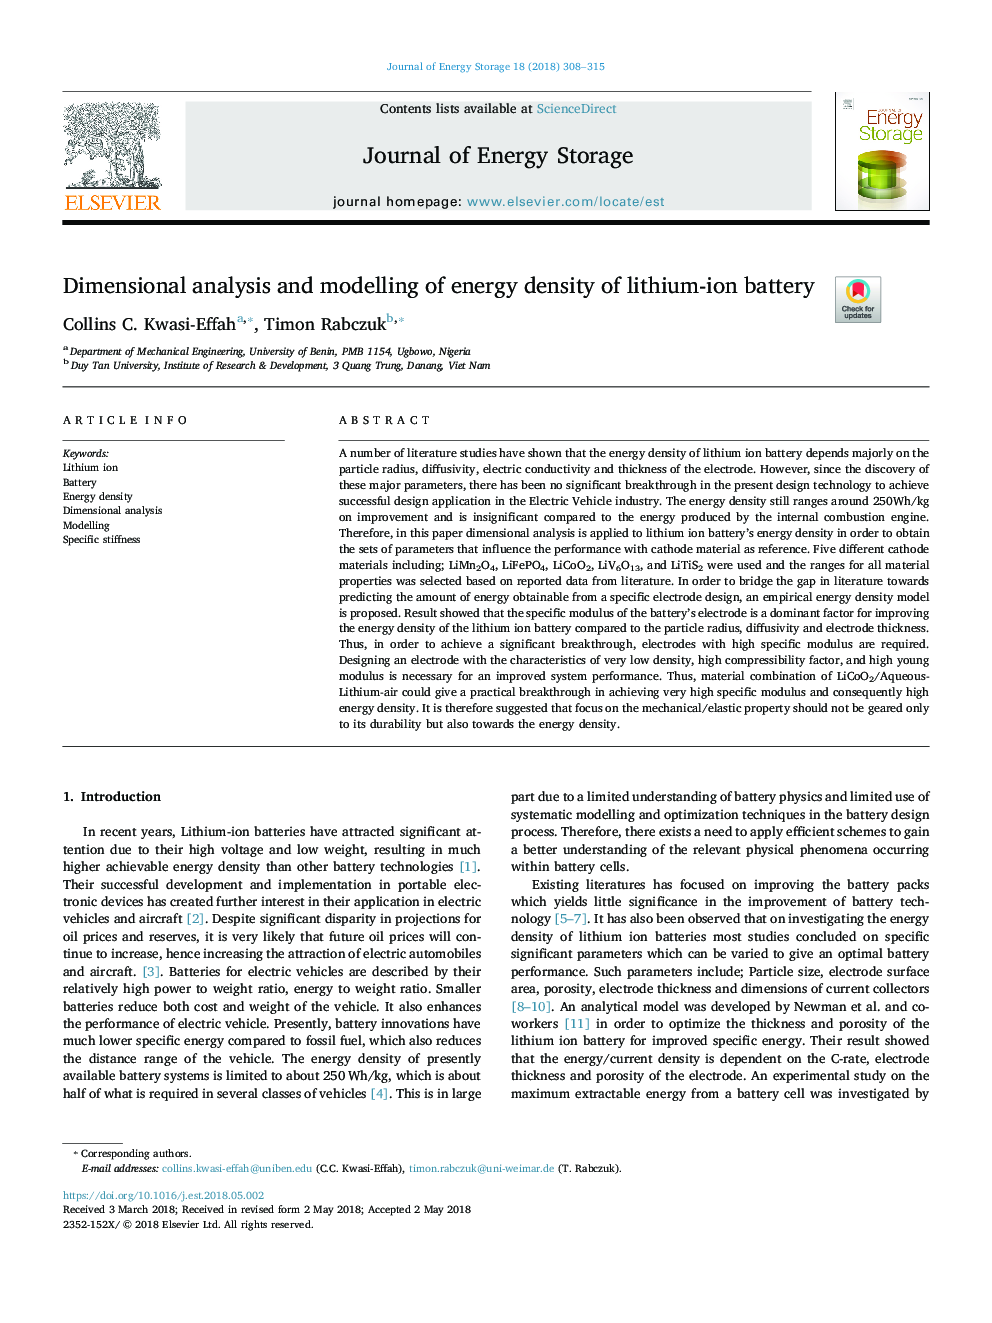 تجزیه و تحلیل ابعاد و مدل سازی تراکم انرژی باتری لیتیوم یون 